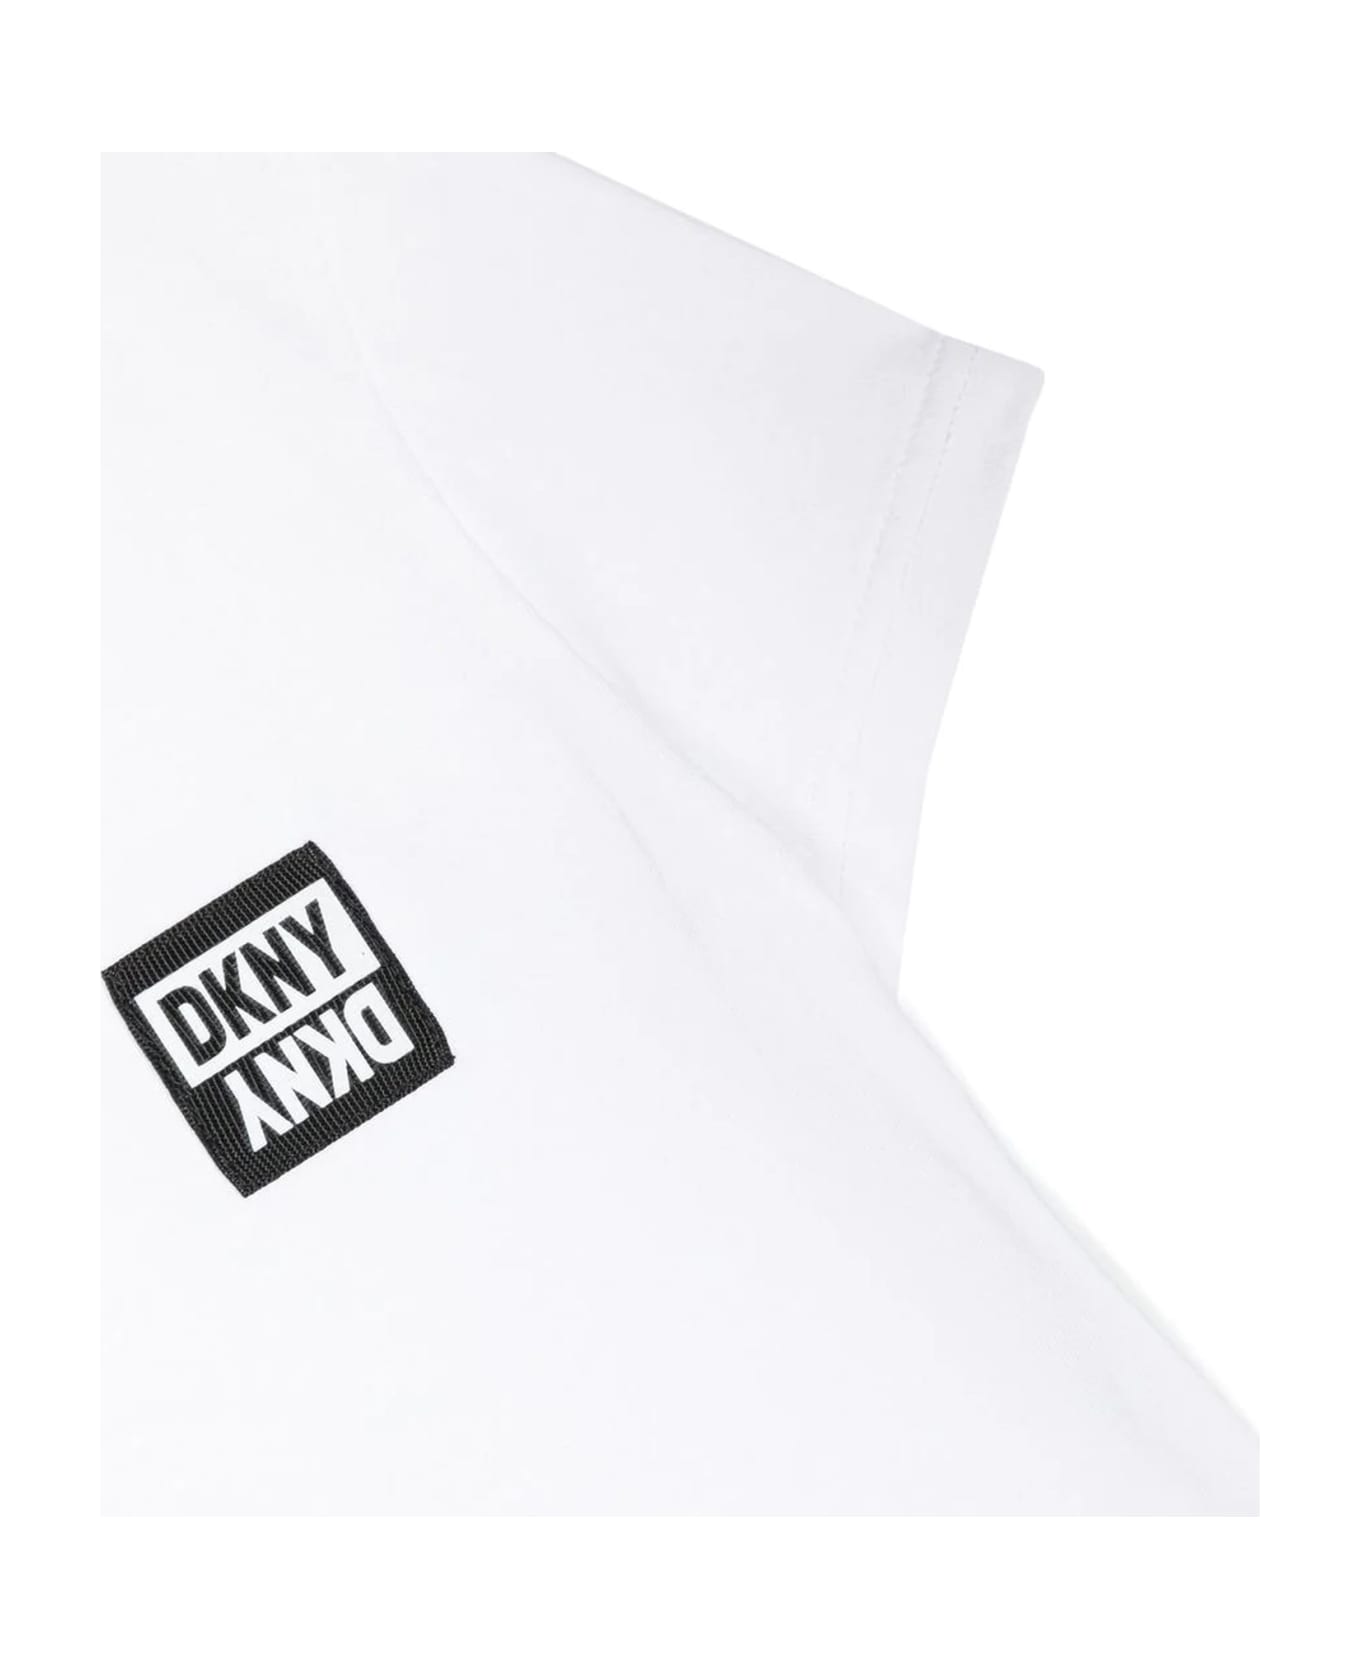 DKNY White Cotton Tshirt - P Bianco